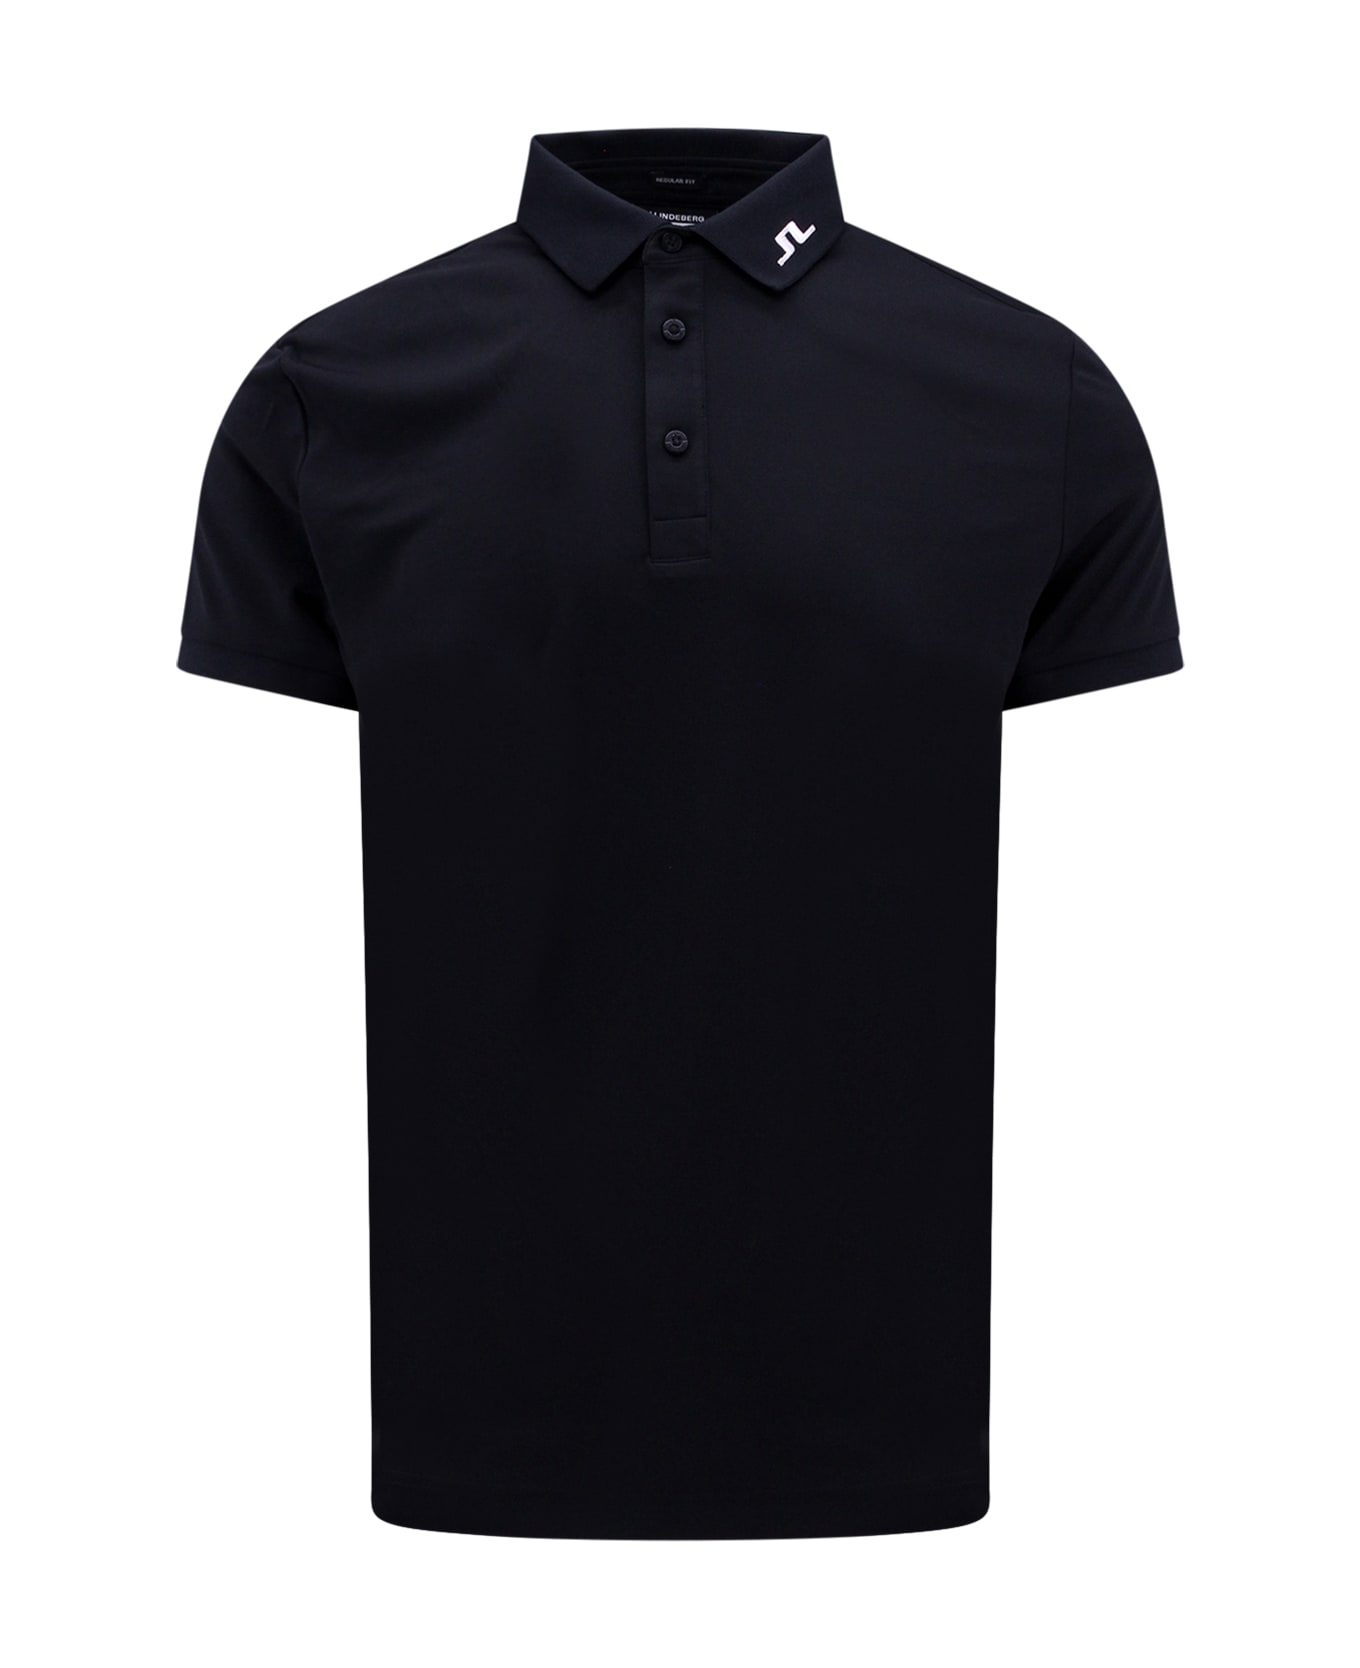 J.Lindeberg Jeff Polo Shirt - Black